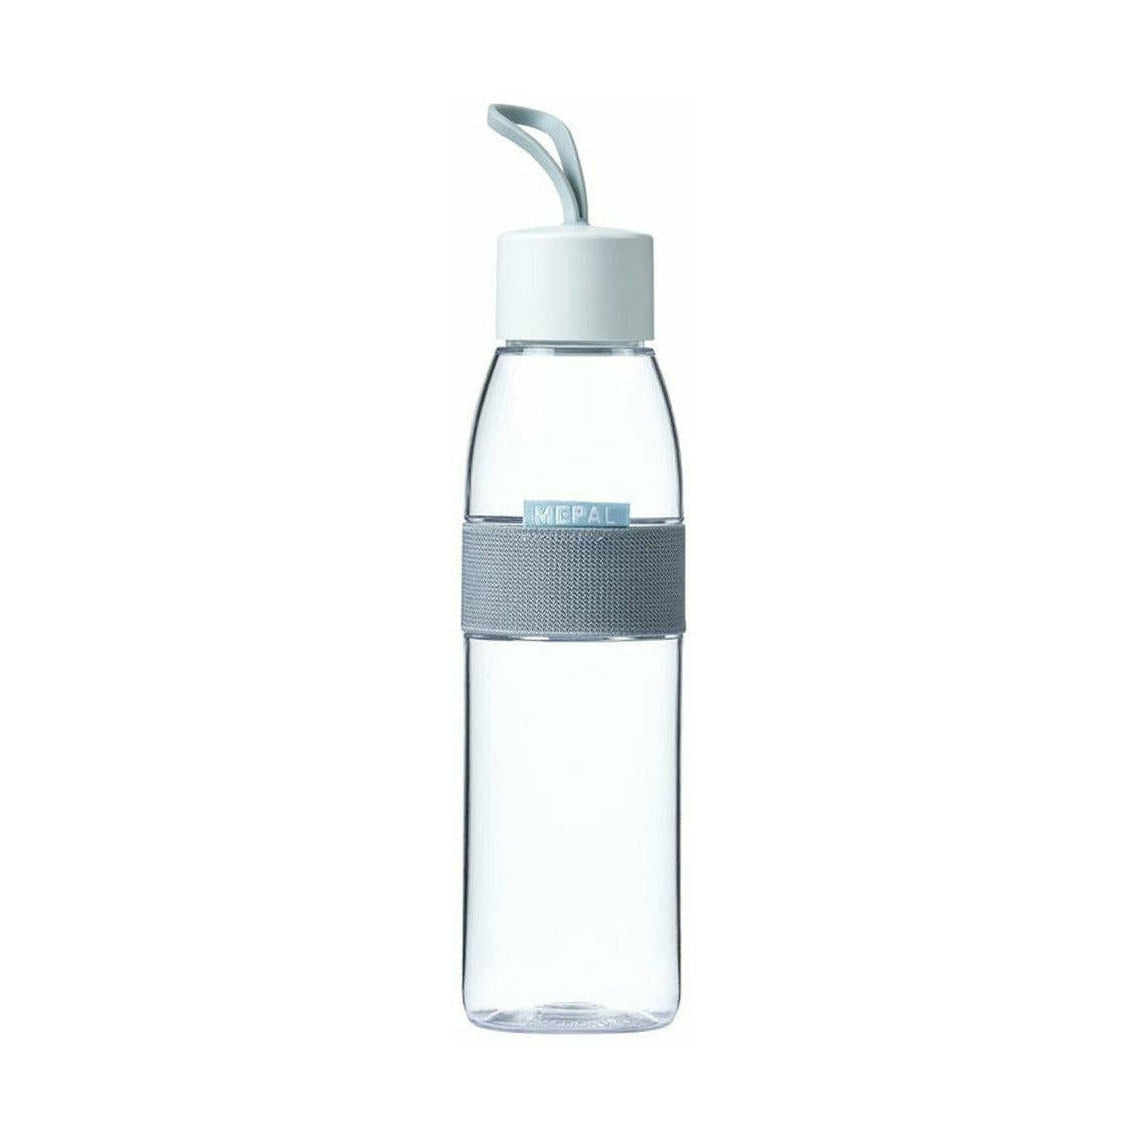 Ellipse de bouteille d'eau mépale 0,5 L, transparent / blanc